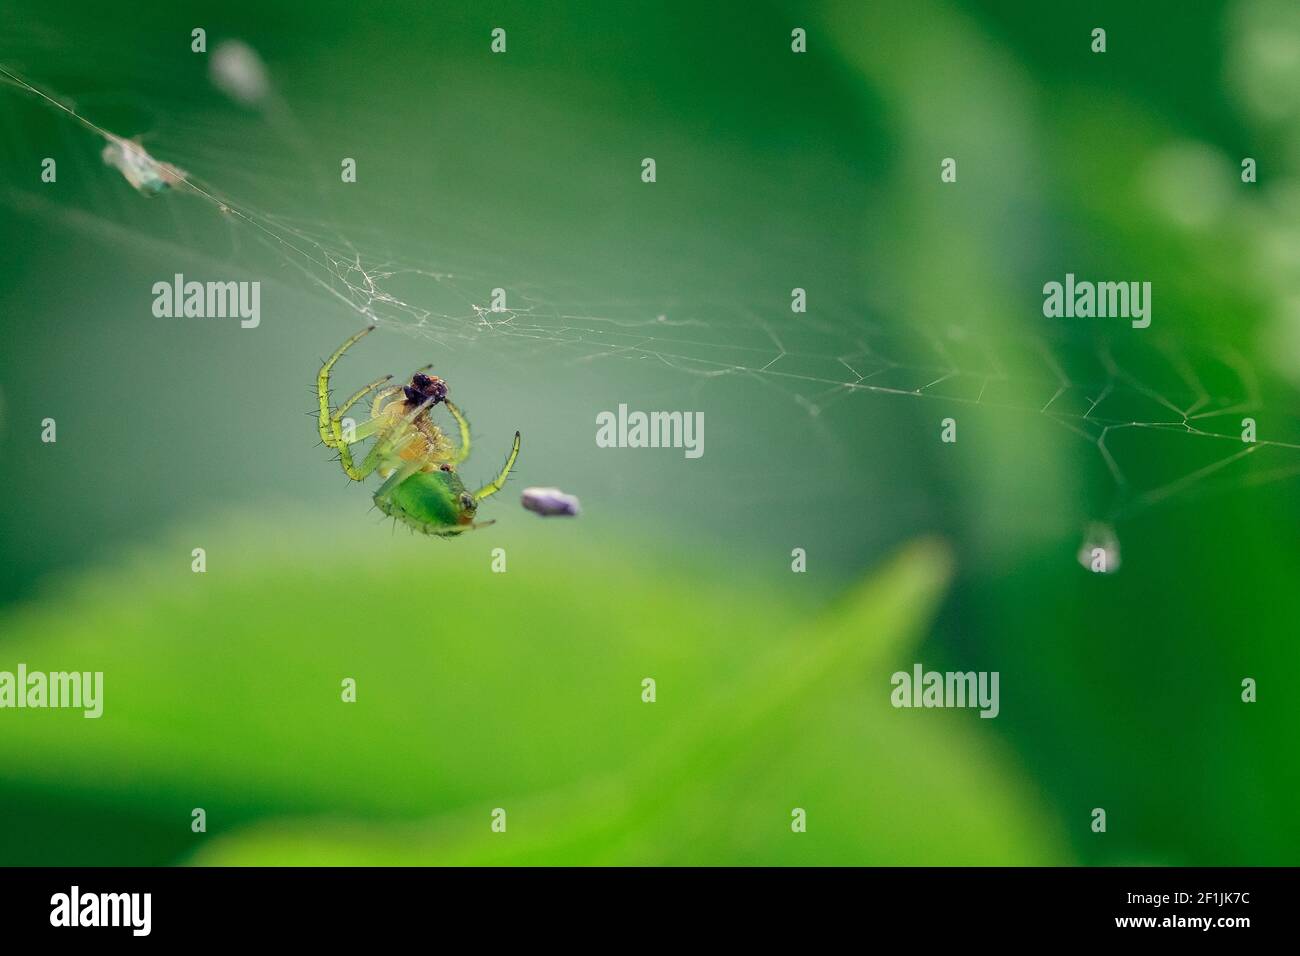 Jardín europeo pepino verde araña colgando en una tela de araña sobre un fondo verde. Insecto en el ambiente adecuado en el verano. Verde verano backgr Foto de stock